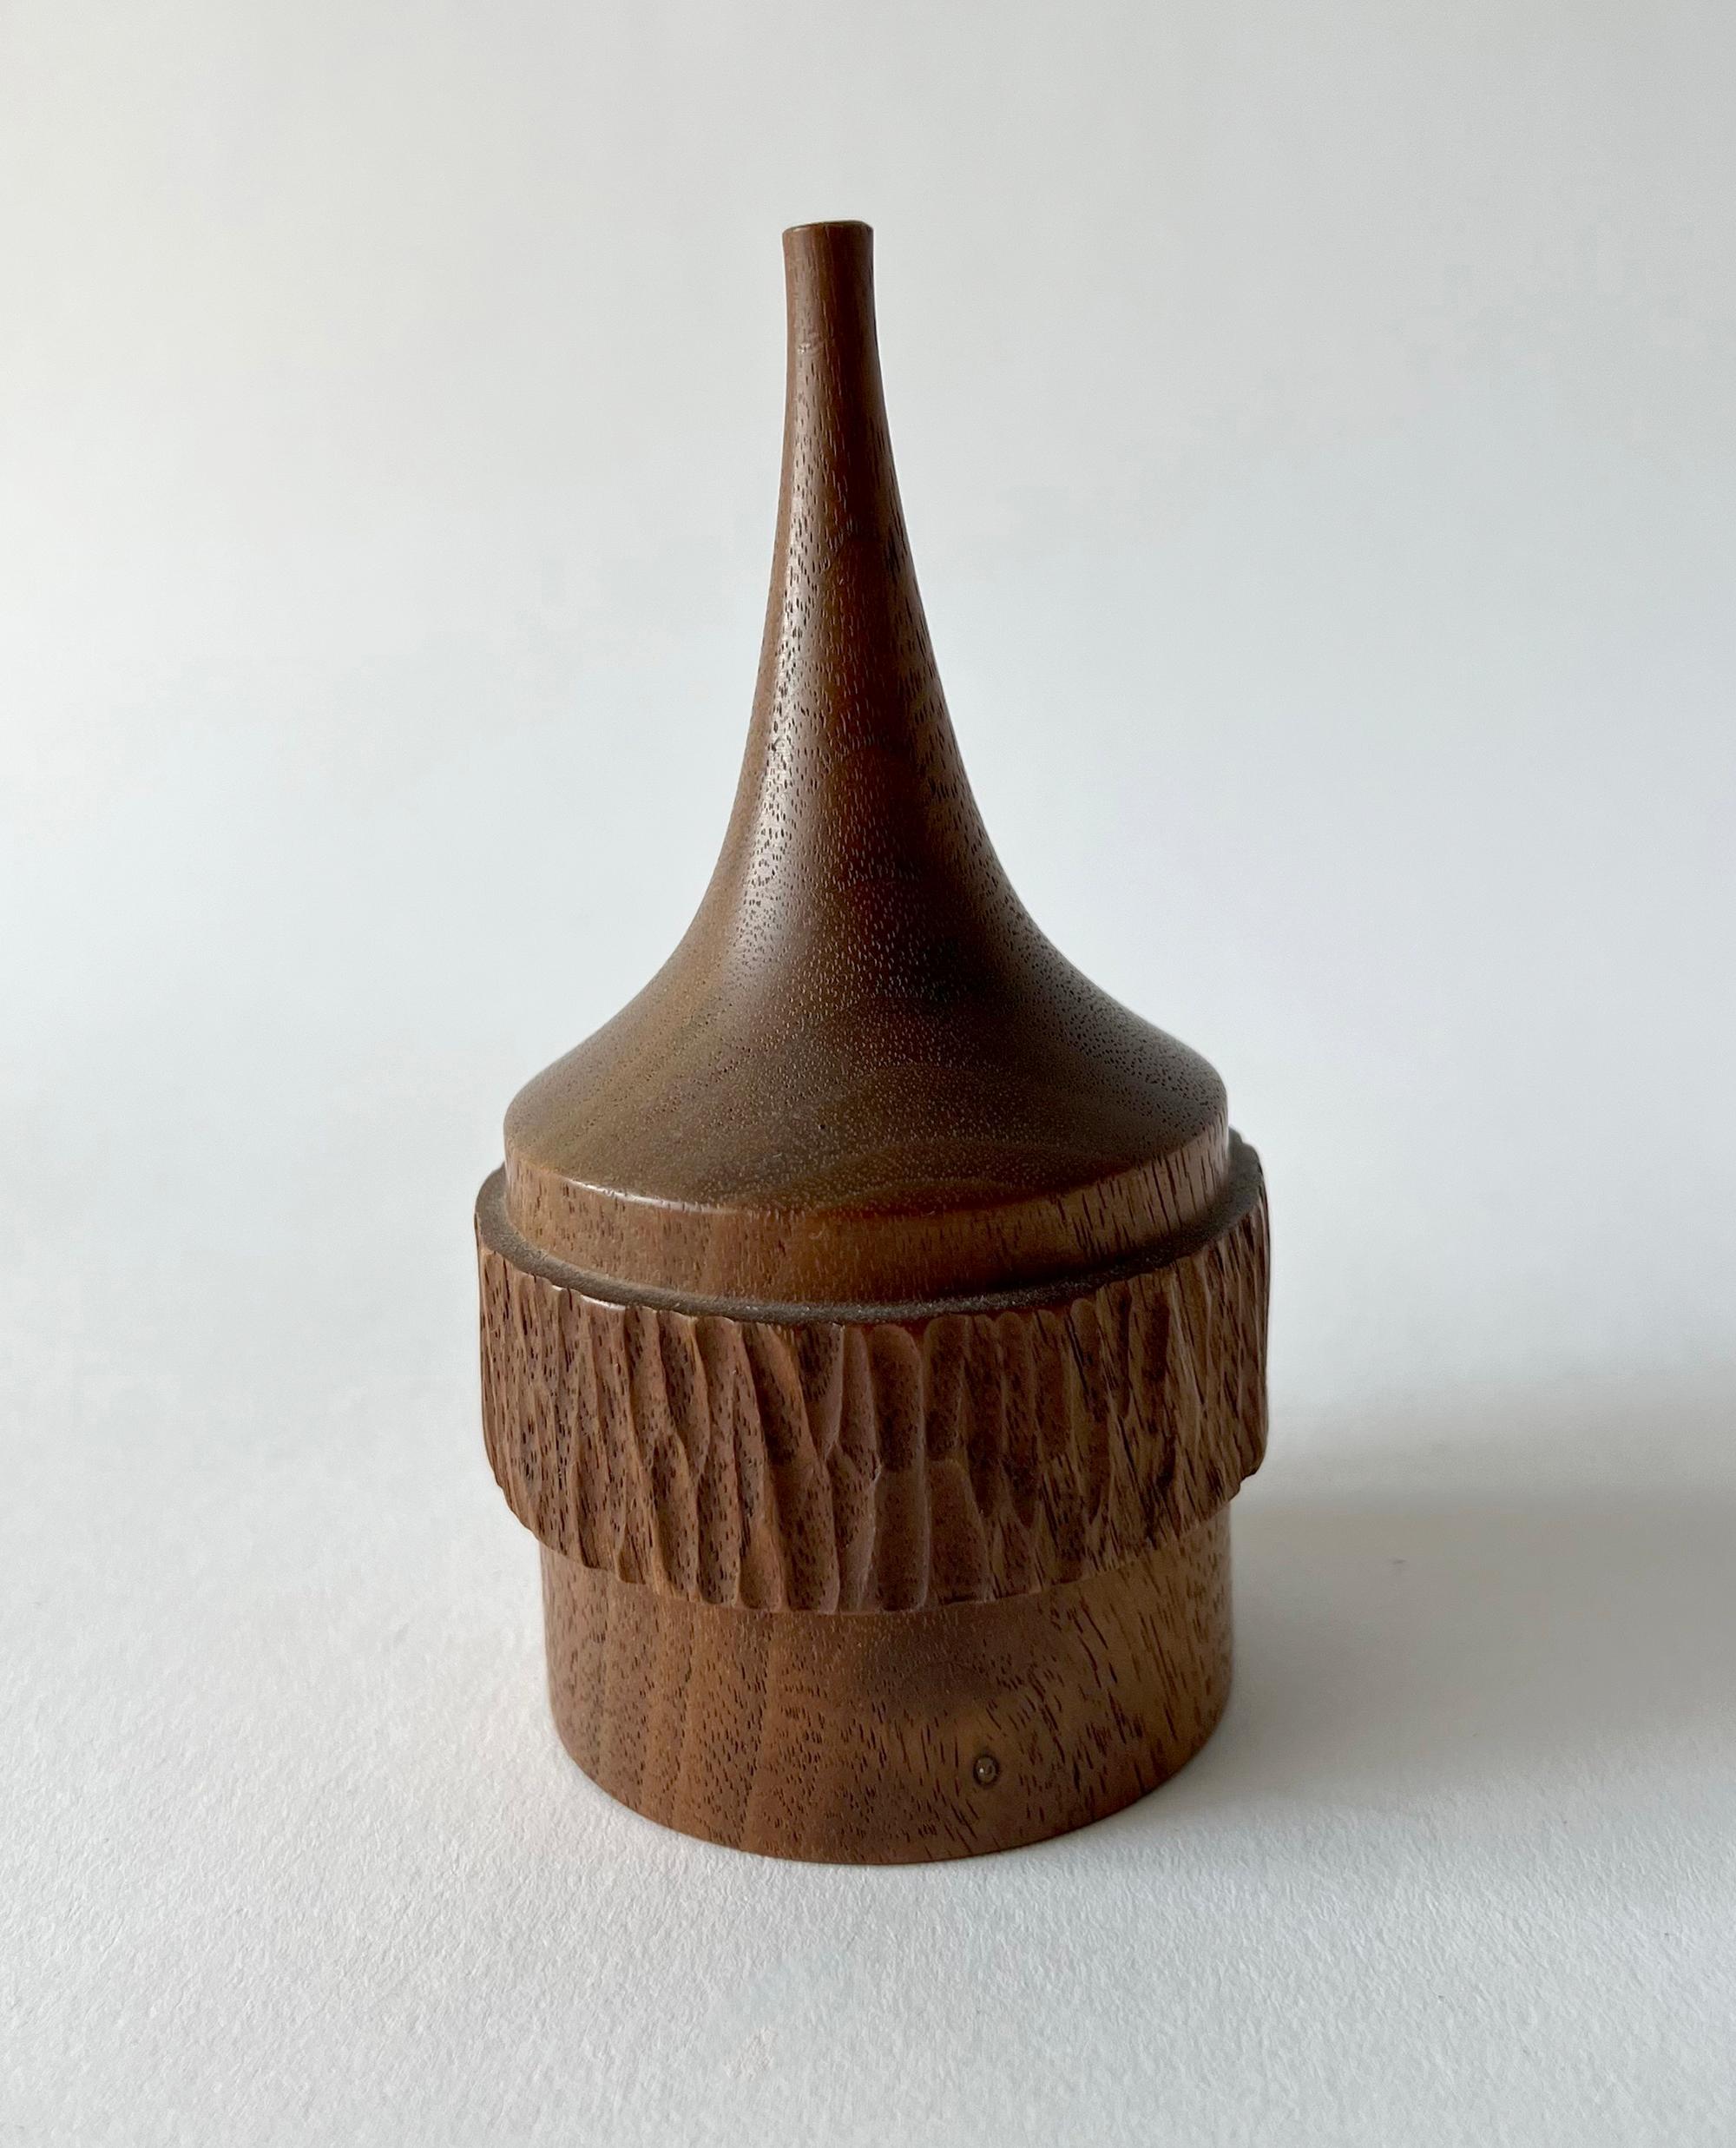 Hand turned wood weed vase created by Heinz Norhausen. Vase measures 4.5